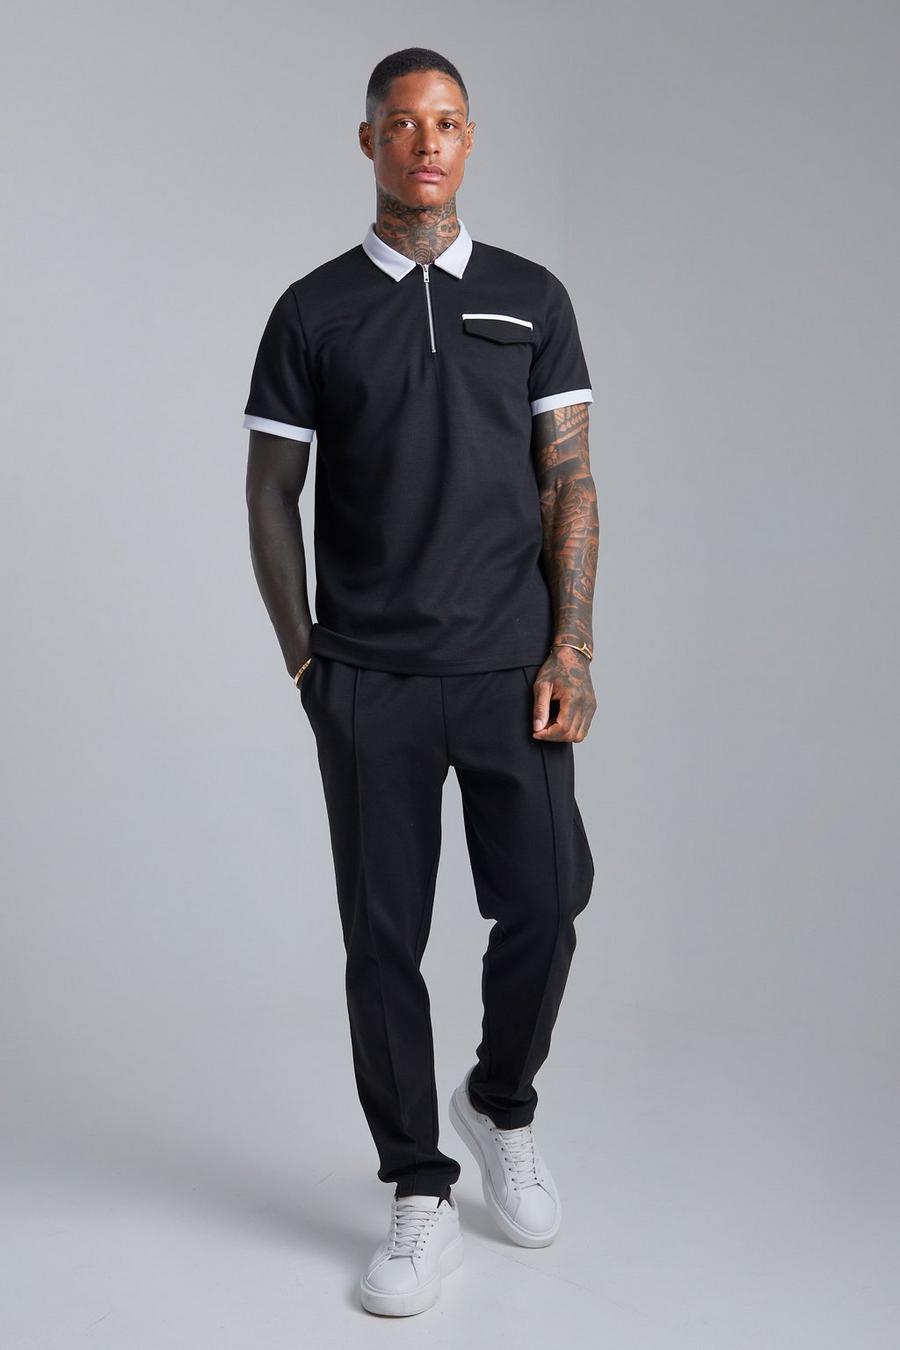 Pantalón deportivo y polo ajustado en contraste, Black nero